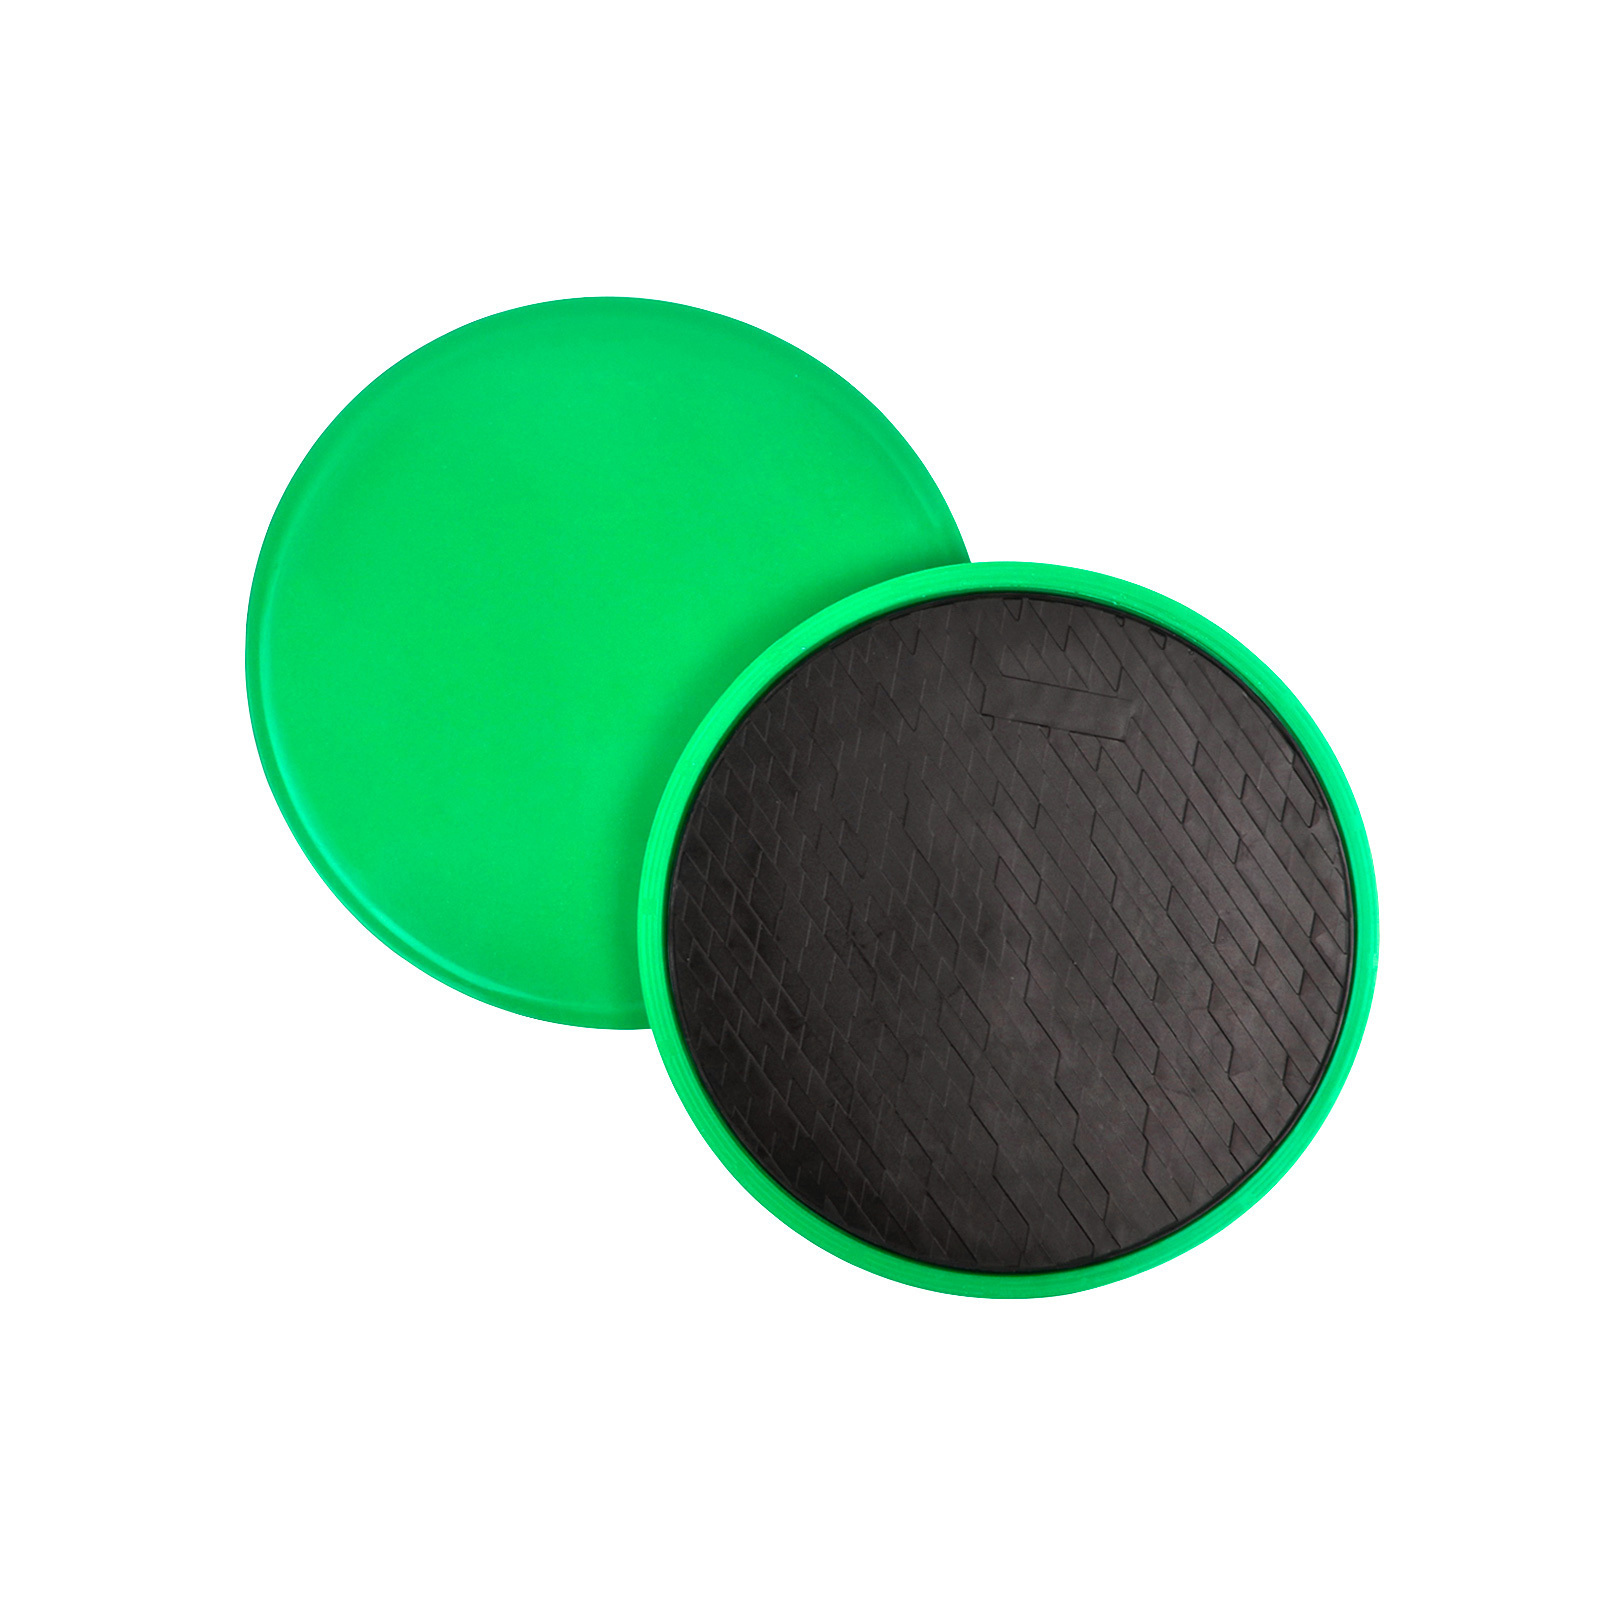 Диски для скольжения, глайдинг диски CLIFF G1, PVC+EVA, зеленые